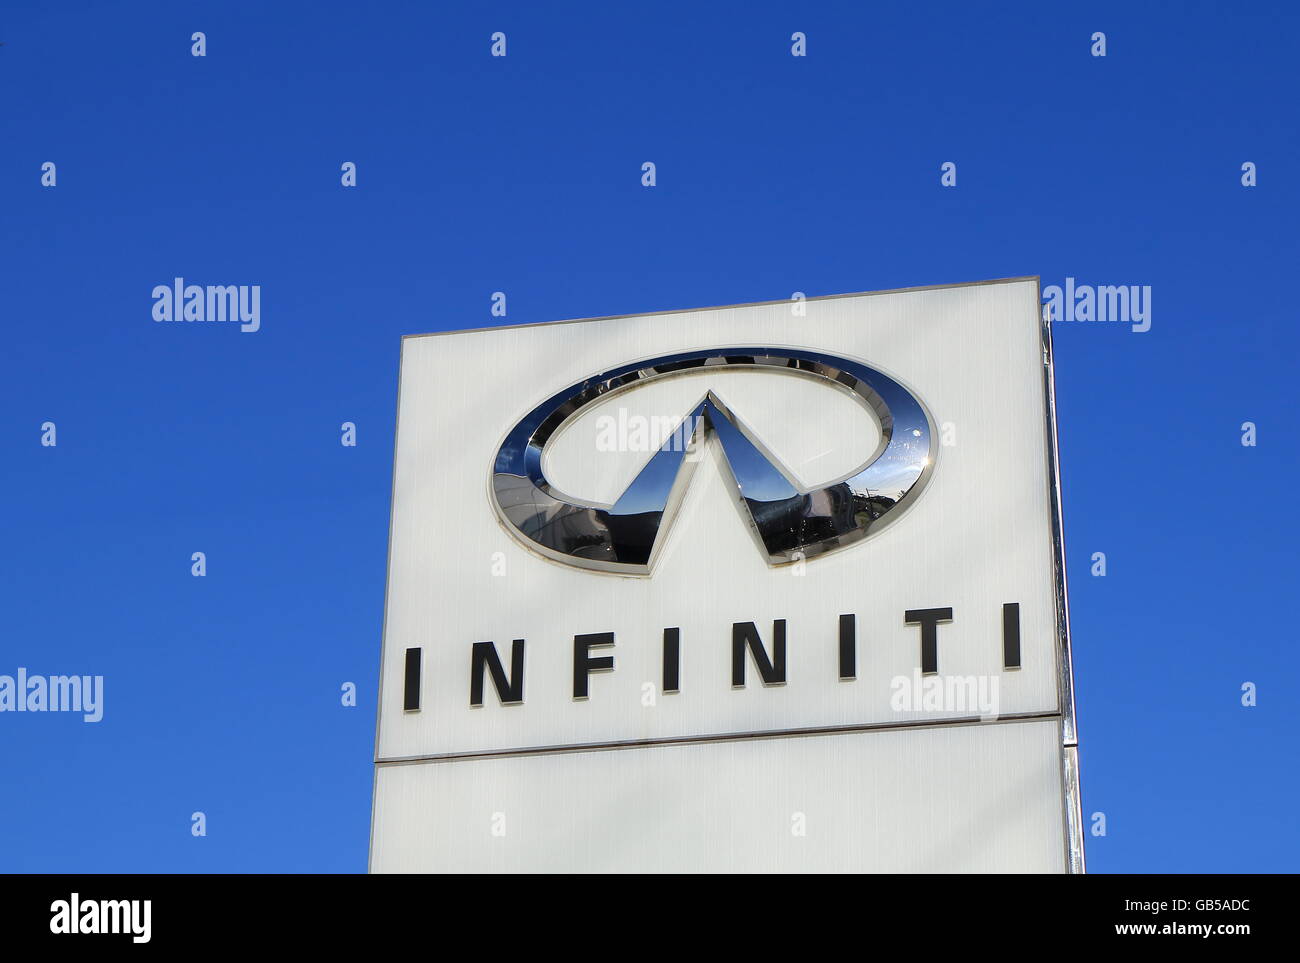 Infiniti car manufacturer Stock Photo